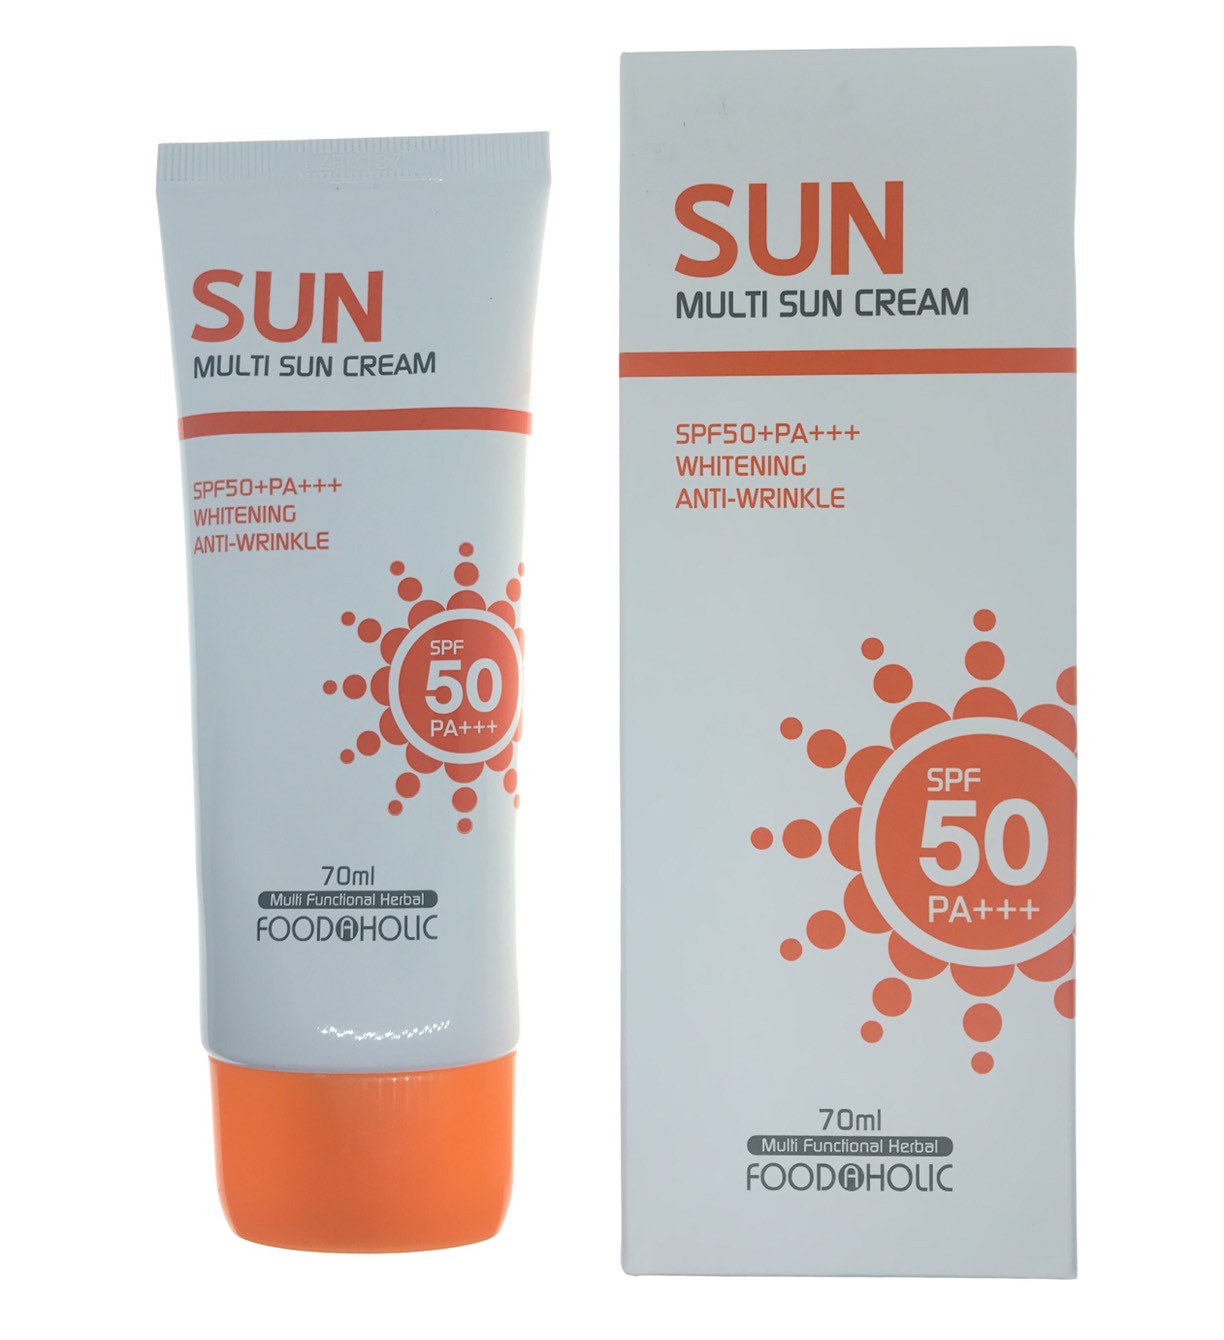 Sun : multi sun cream sp50+PA+++